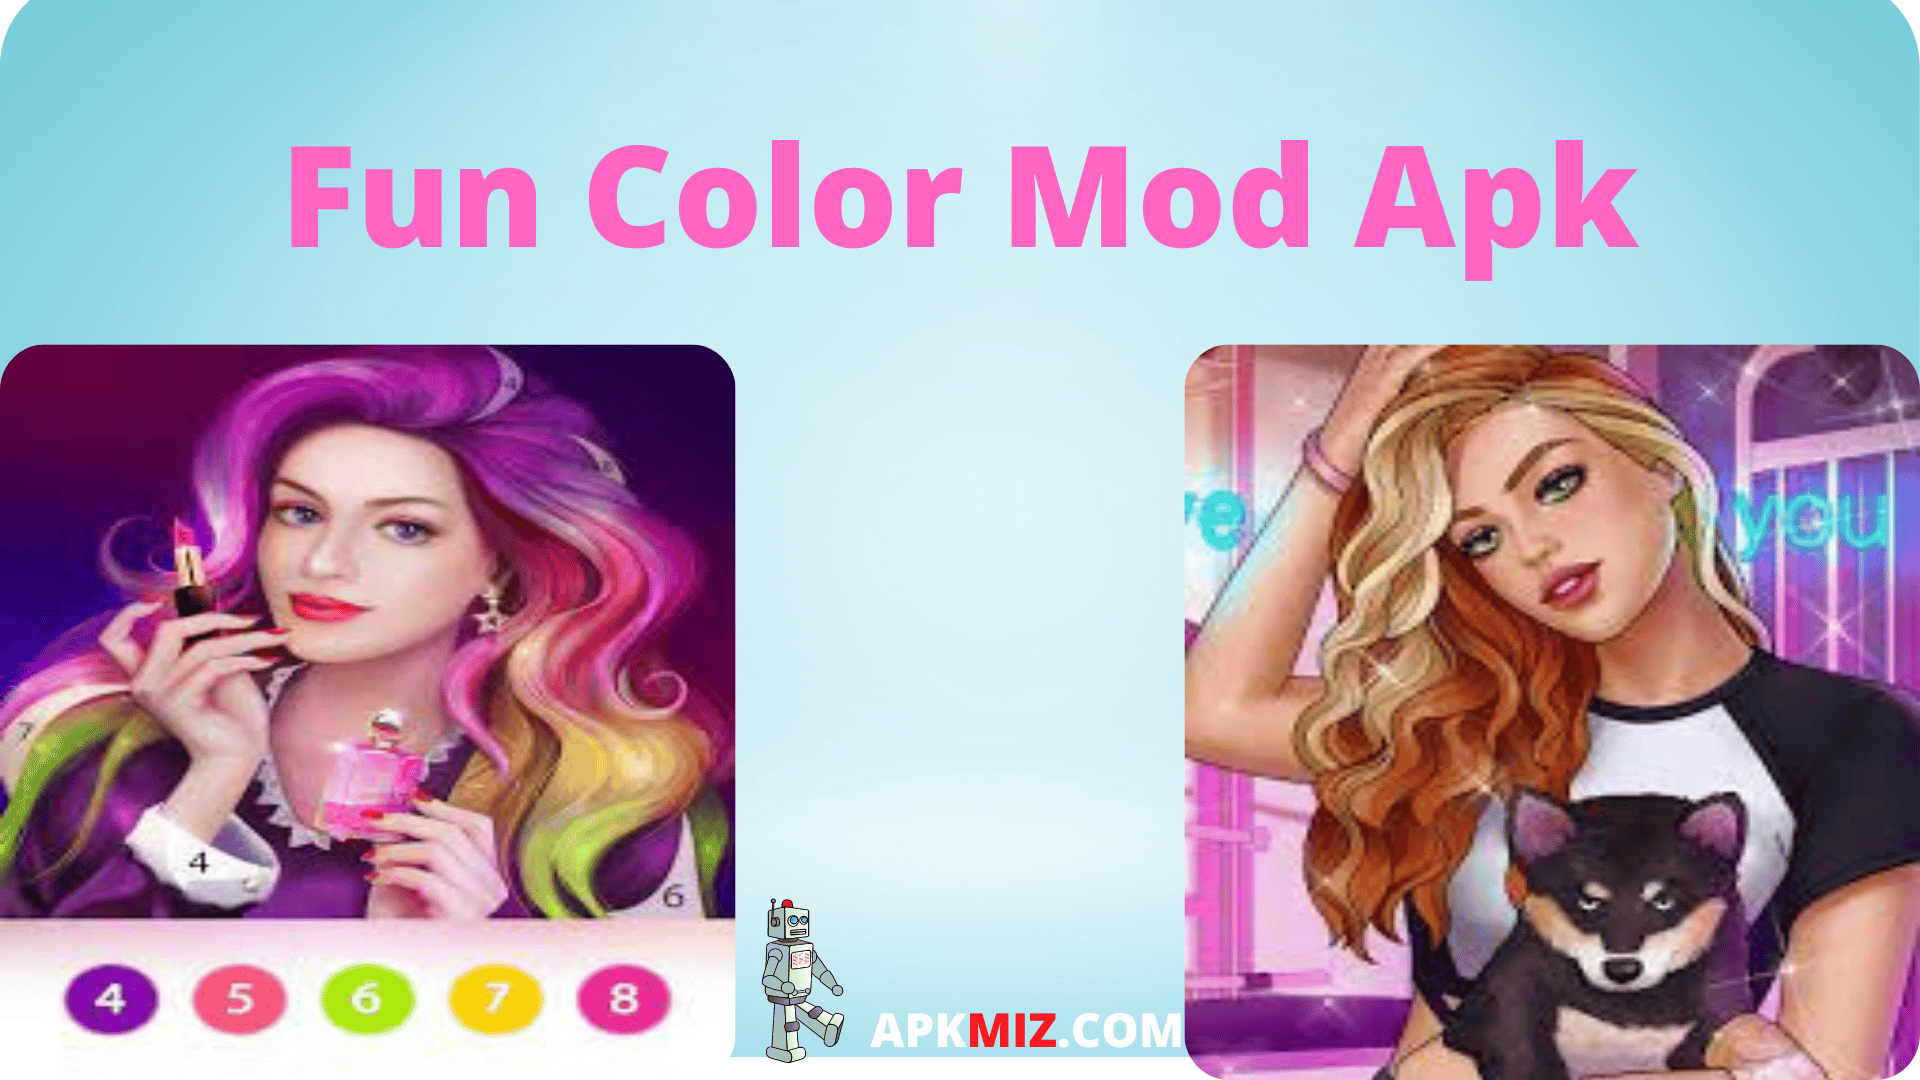 Fun Color Mod Apk